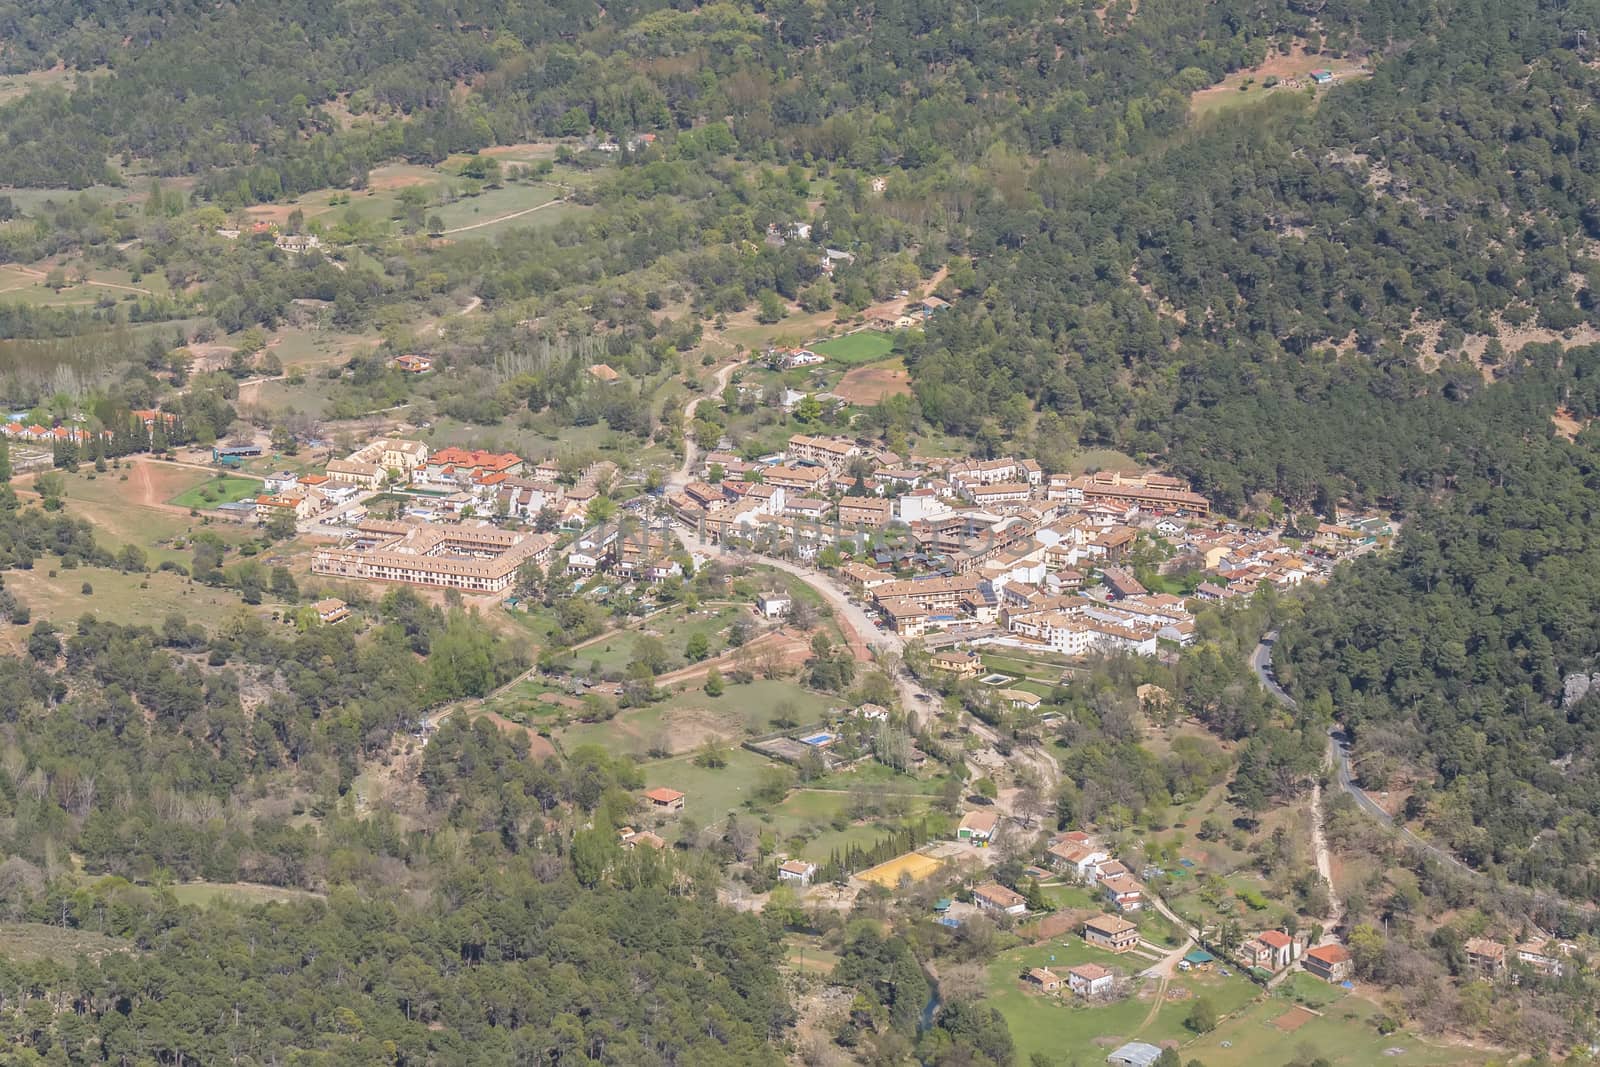 Arroyo Frio town in Sierra de Cazrola, Jaen, Spain